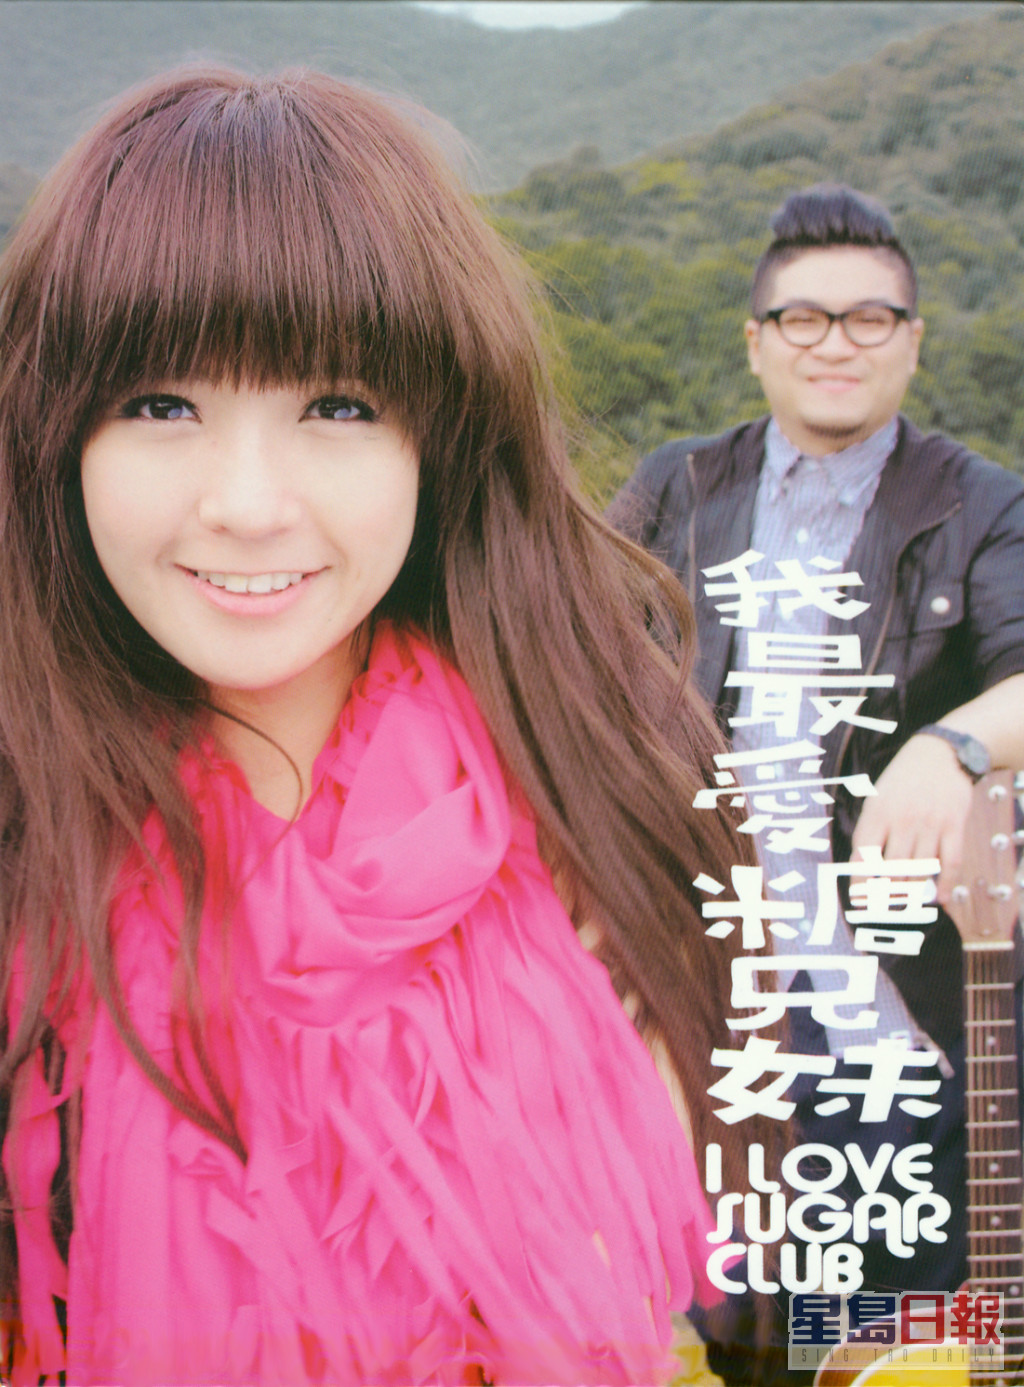 2011年推出首张专辑《我最爱糖兄妹》。